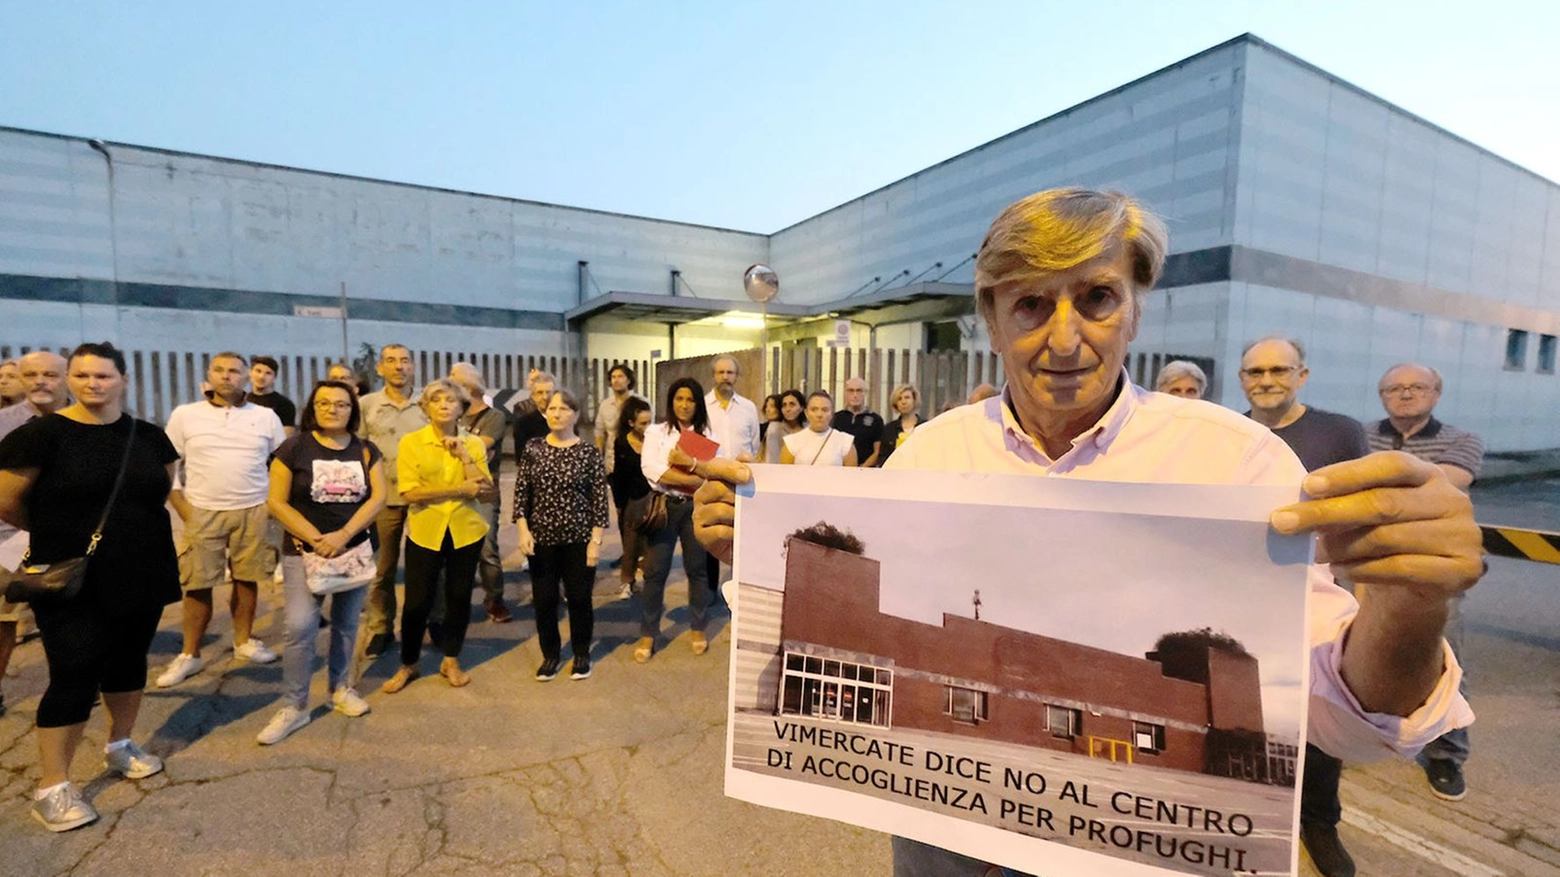 Il Comitato "No centro profughi" davanti all'ex Esselunga a Vimercate 